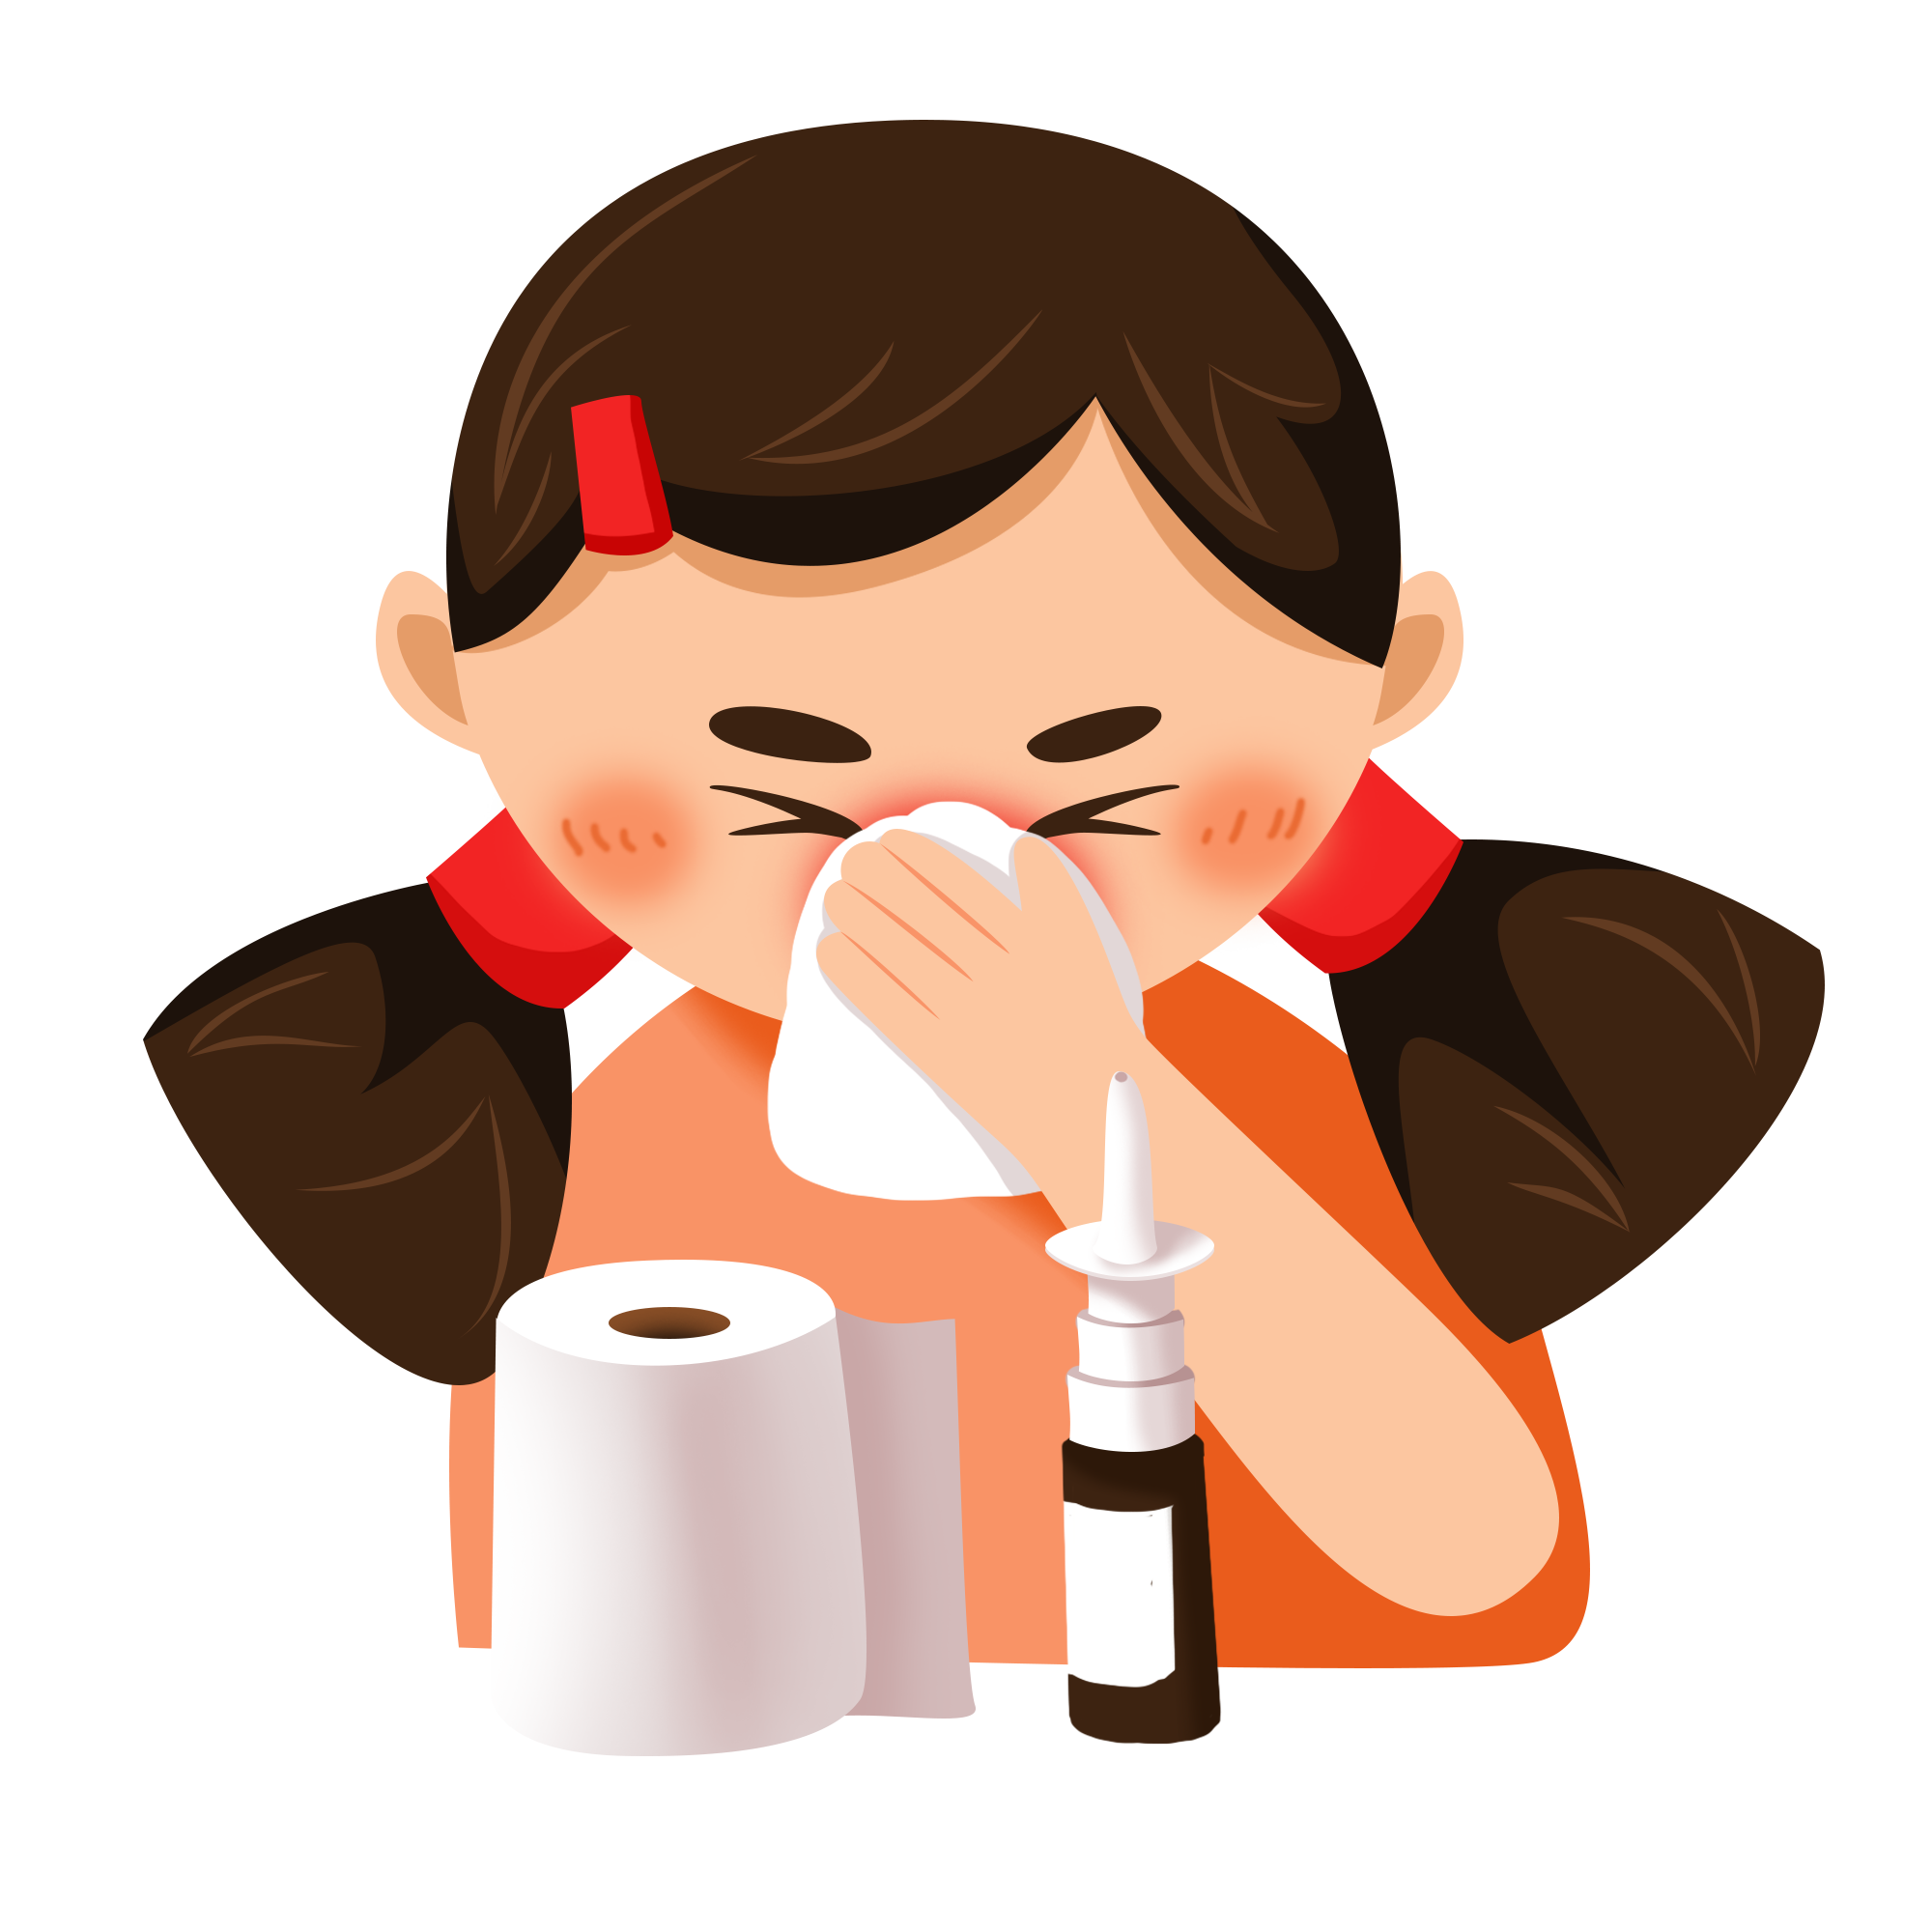 宝宝感冒, 喉咙有痰呼呼响, 该怎么办? 需要注意的并不少